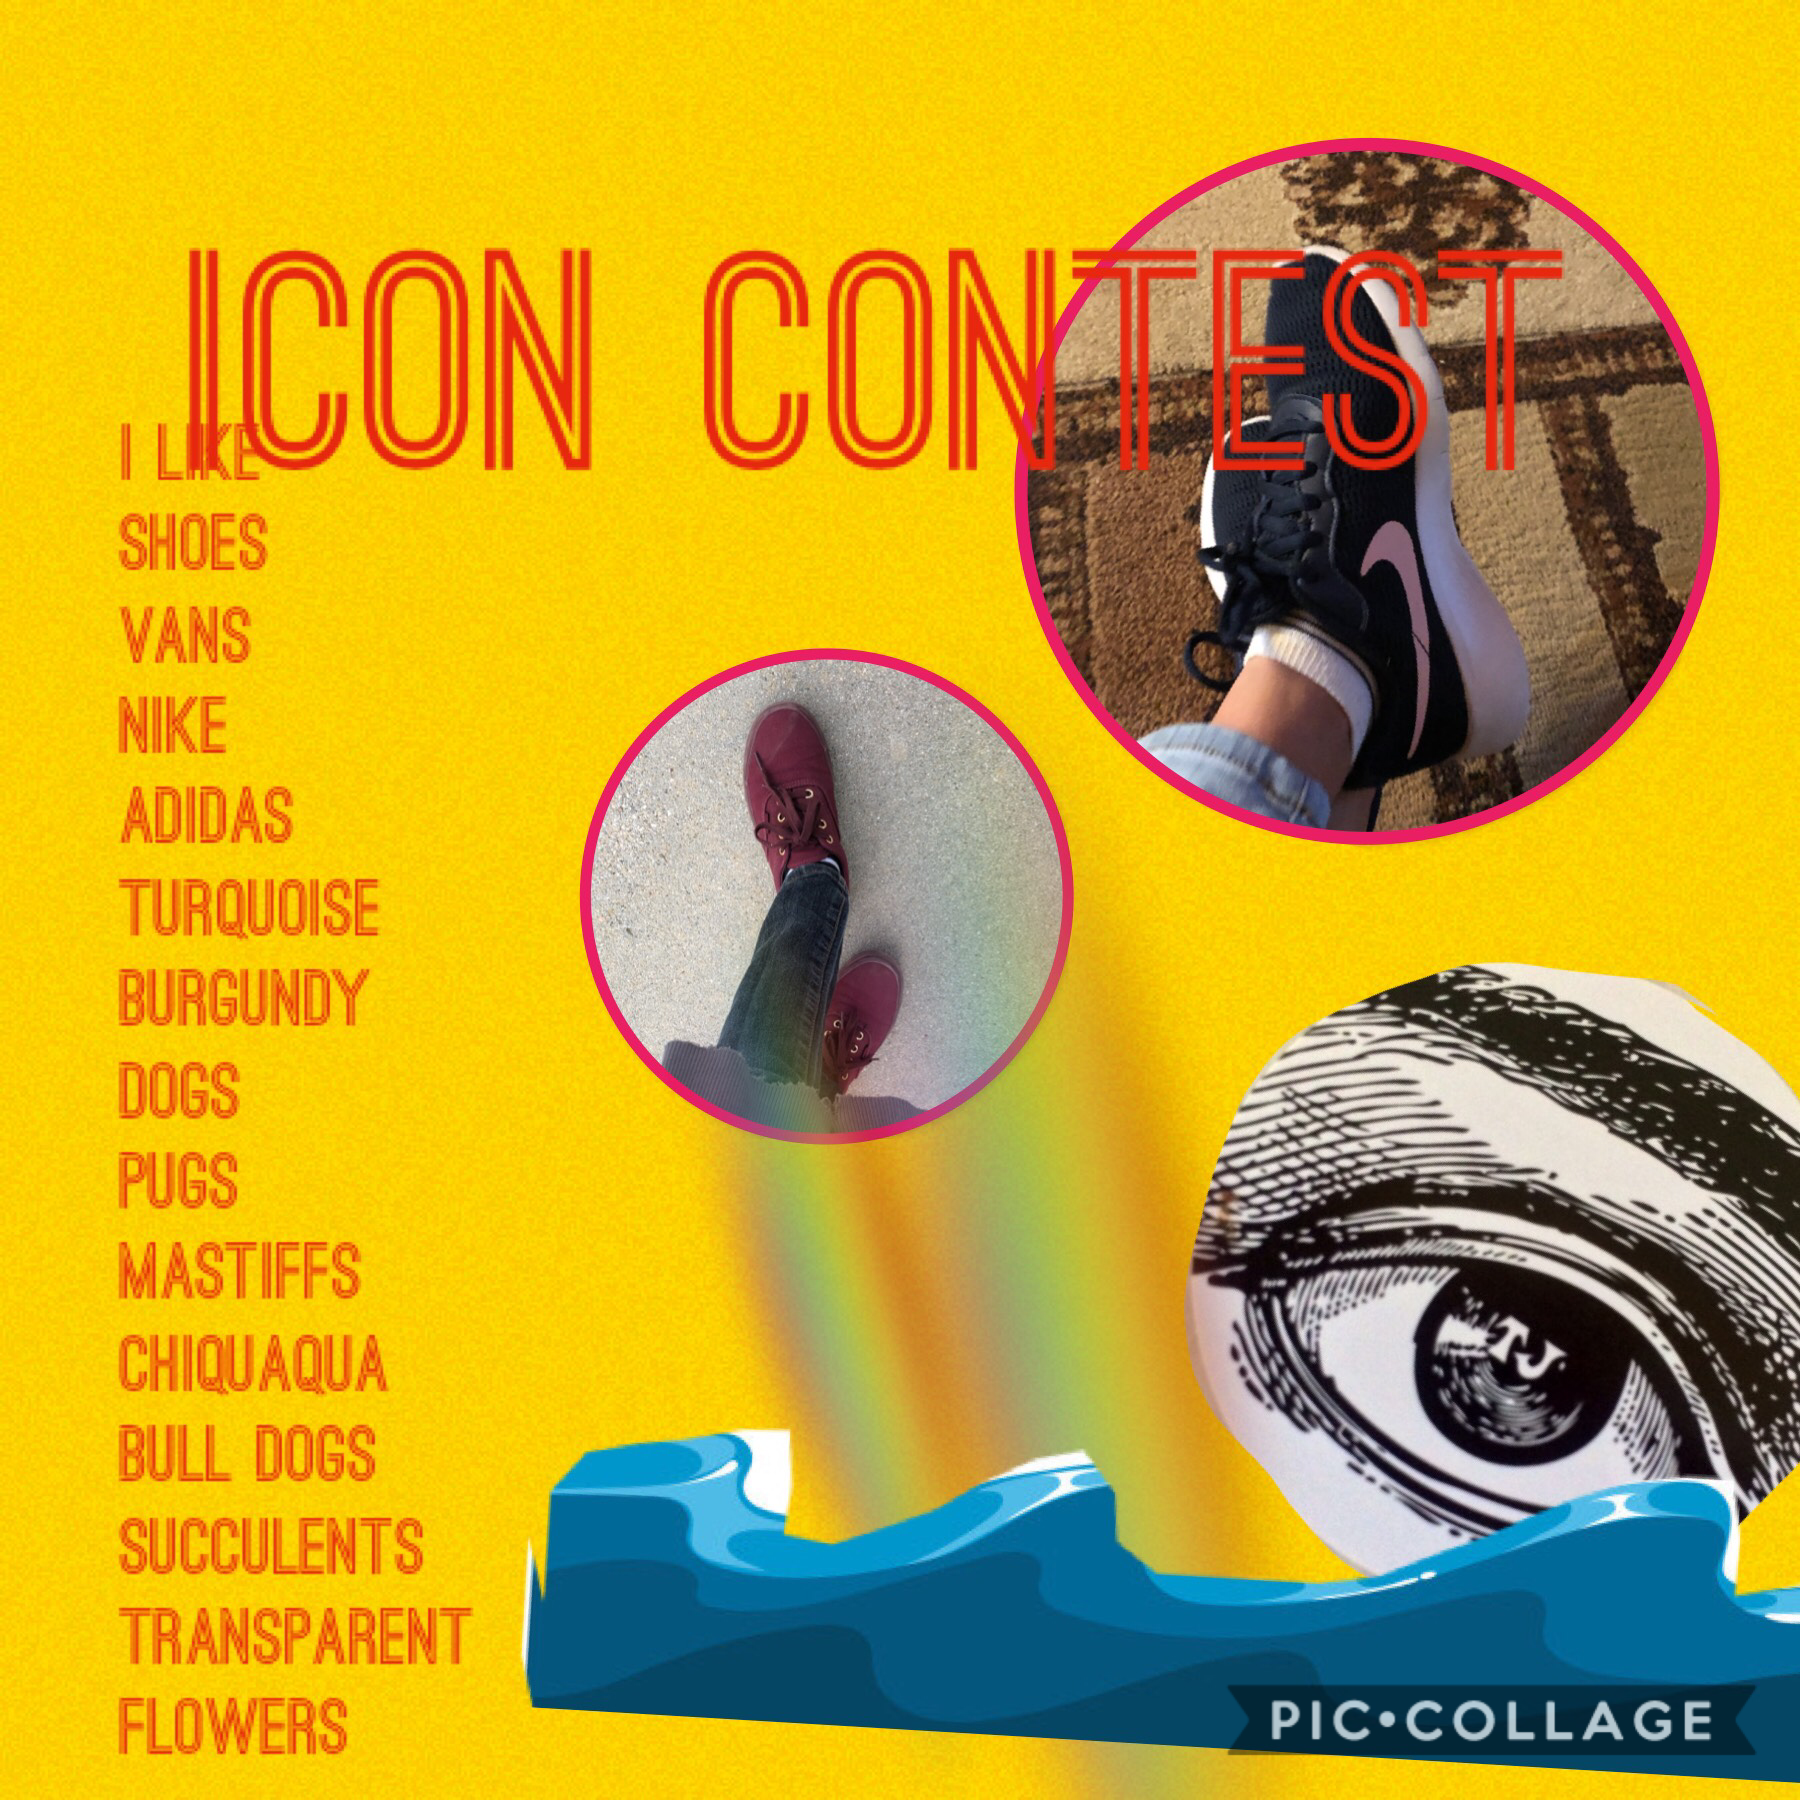 Icon contest 
Be fair 
Have fun 
Be appropriate 
Make it unique 